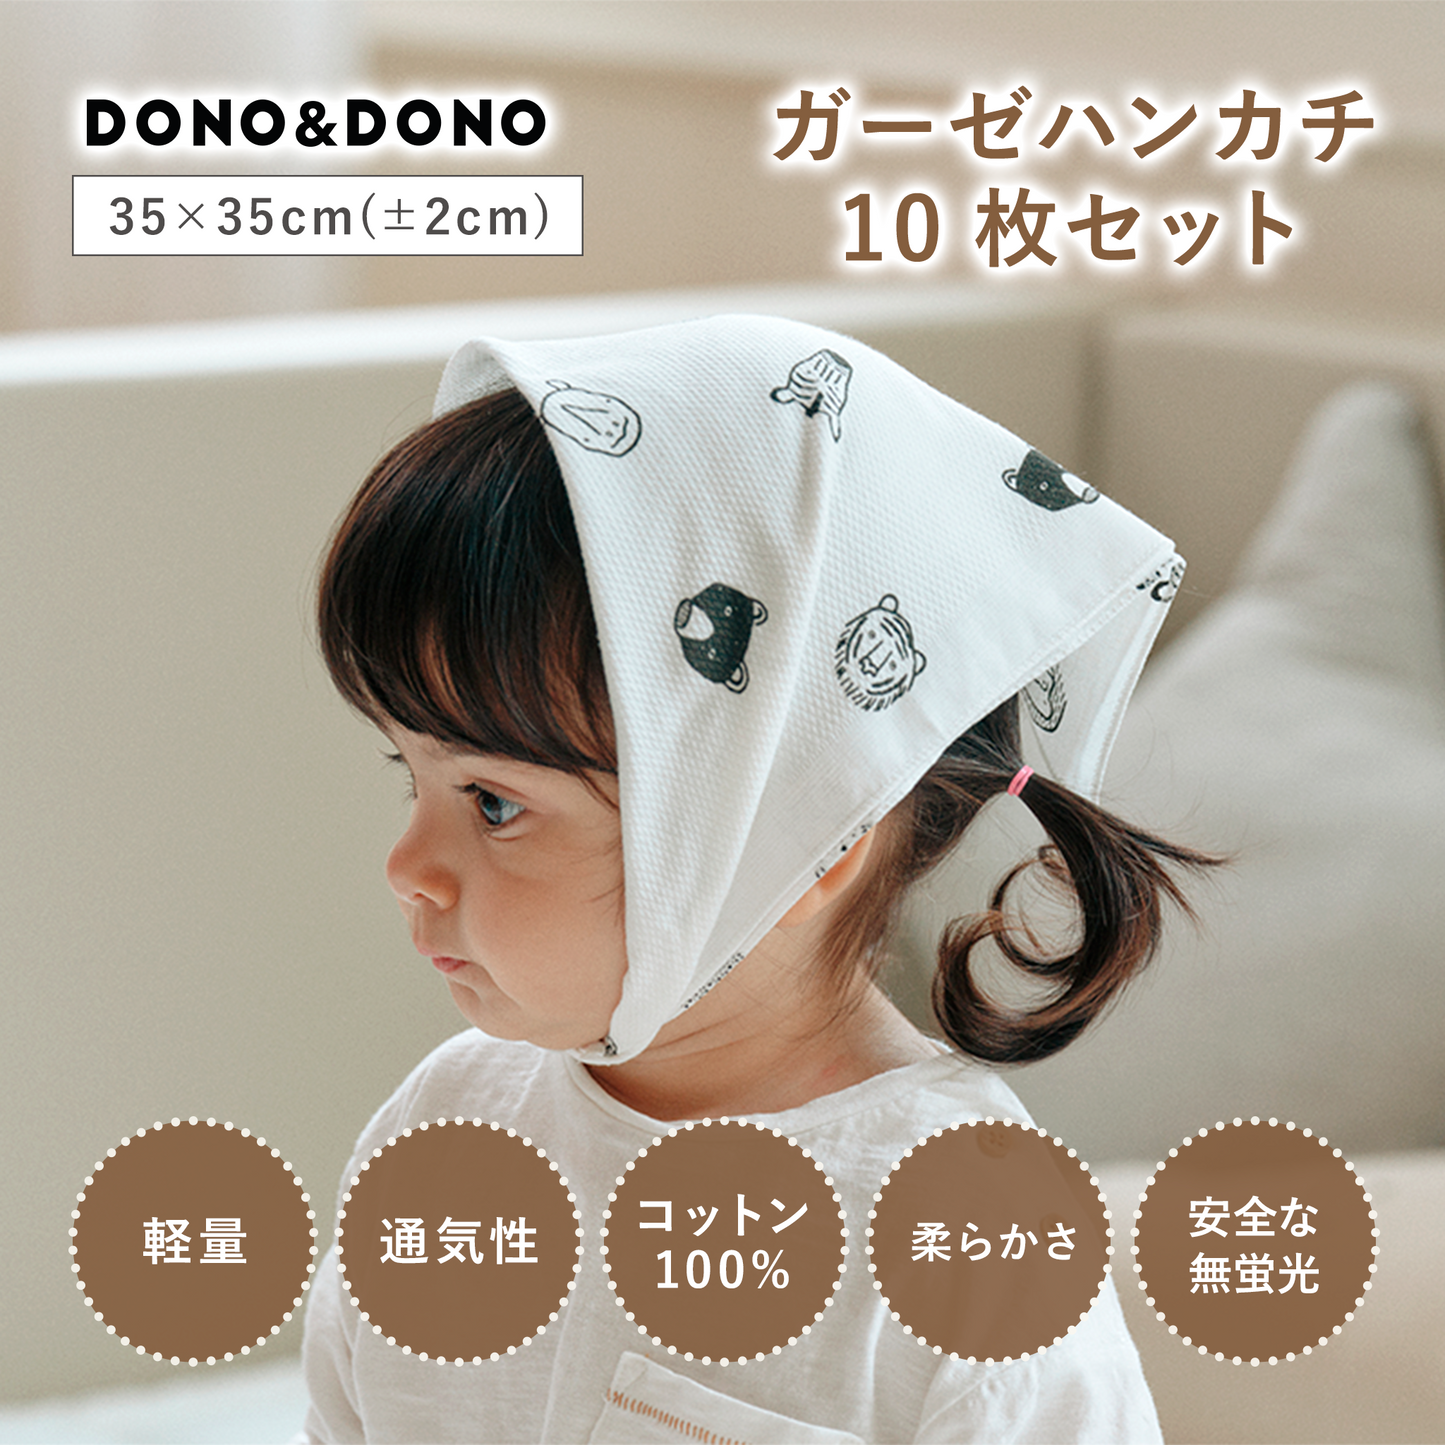 DONO&DONO ガーゼハンカチ10枚セットーDONO&DONO製品2個以上同時購入で１０%OFFー